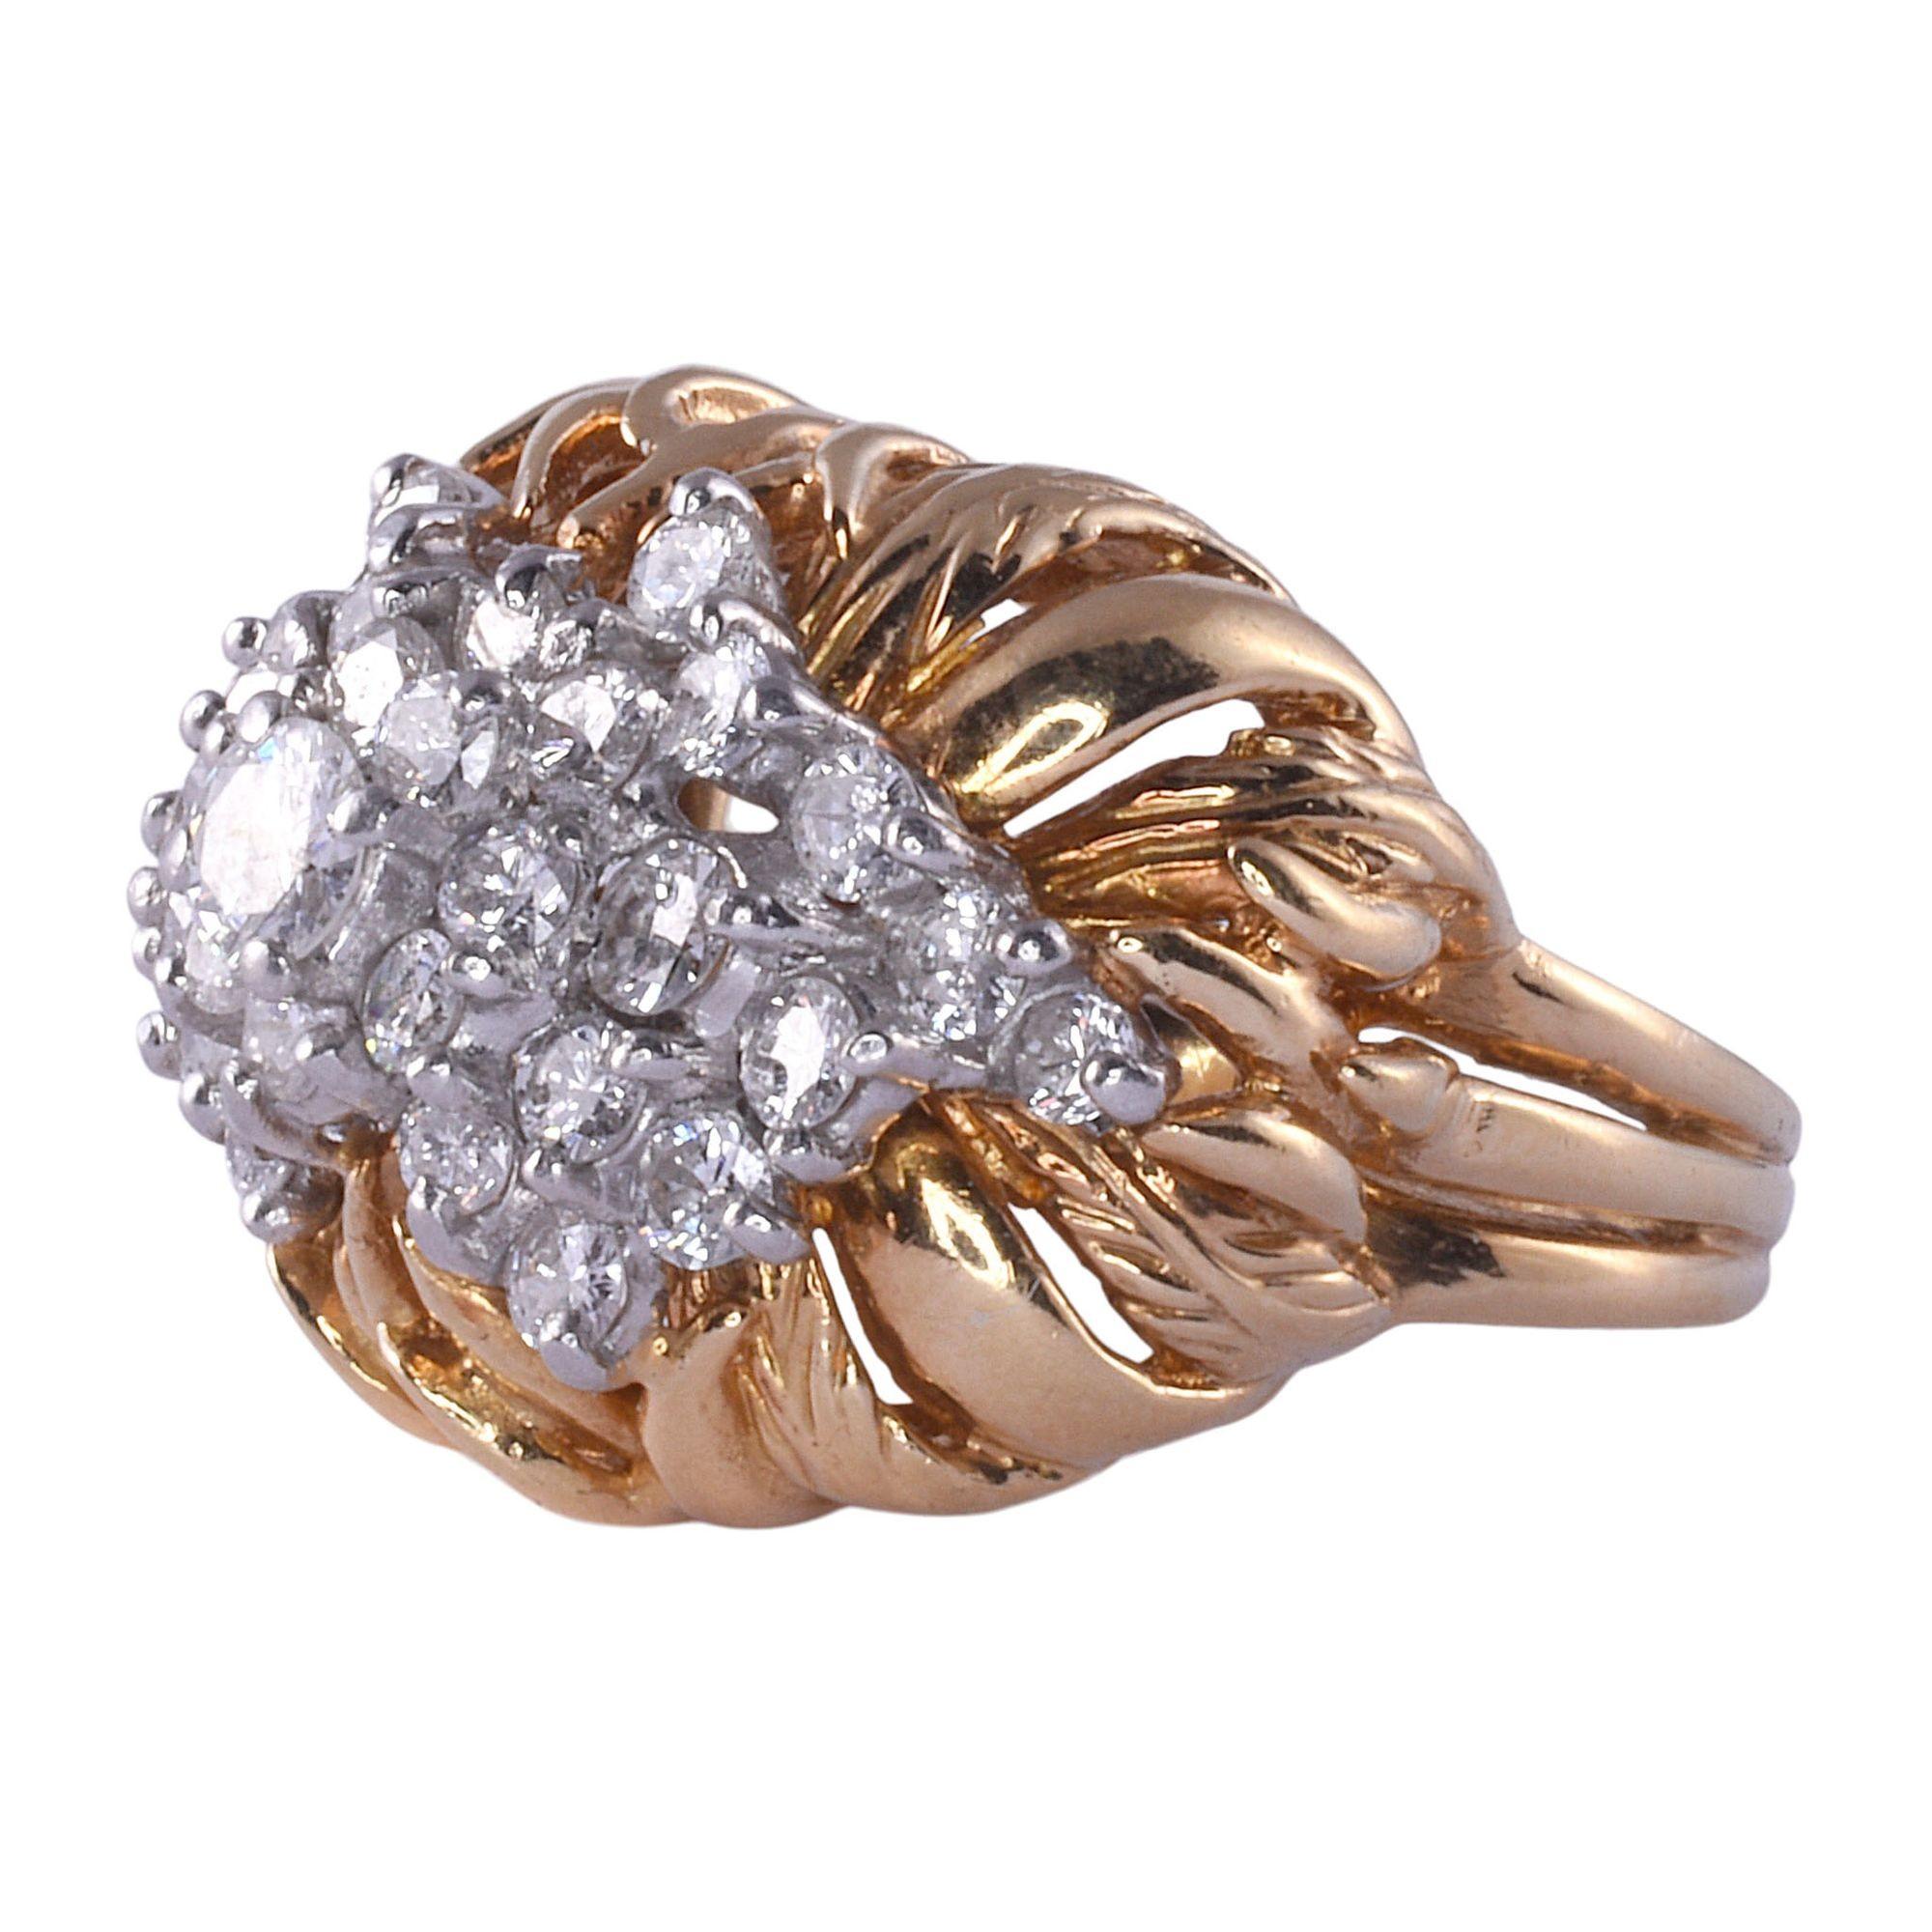 Zweifarbiger Vintage-Ring aus 18 Karat Gold mit Diamanten, ca. 1960. Dieser Vintage-Ring ist aus 18 Karat Gelbgold und 18 Karat Weißgold gefertigt. Es verfügt über einen Cluster von Diamanten mit einem Gesamtgewicht von 1,35 Karat, Reinheit VS und